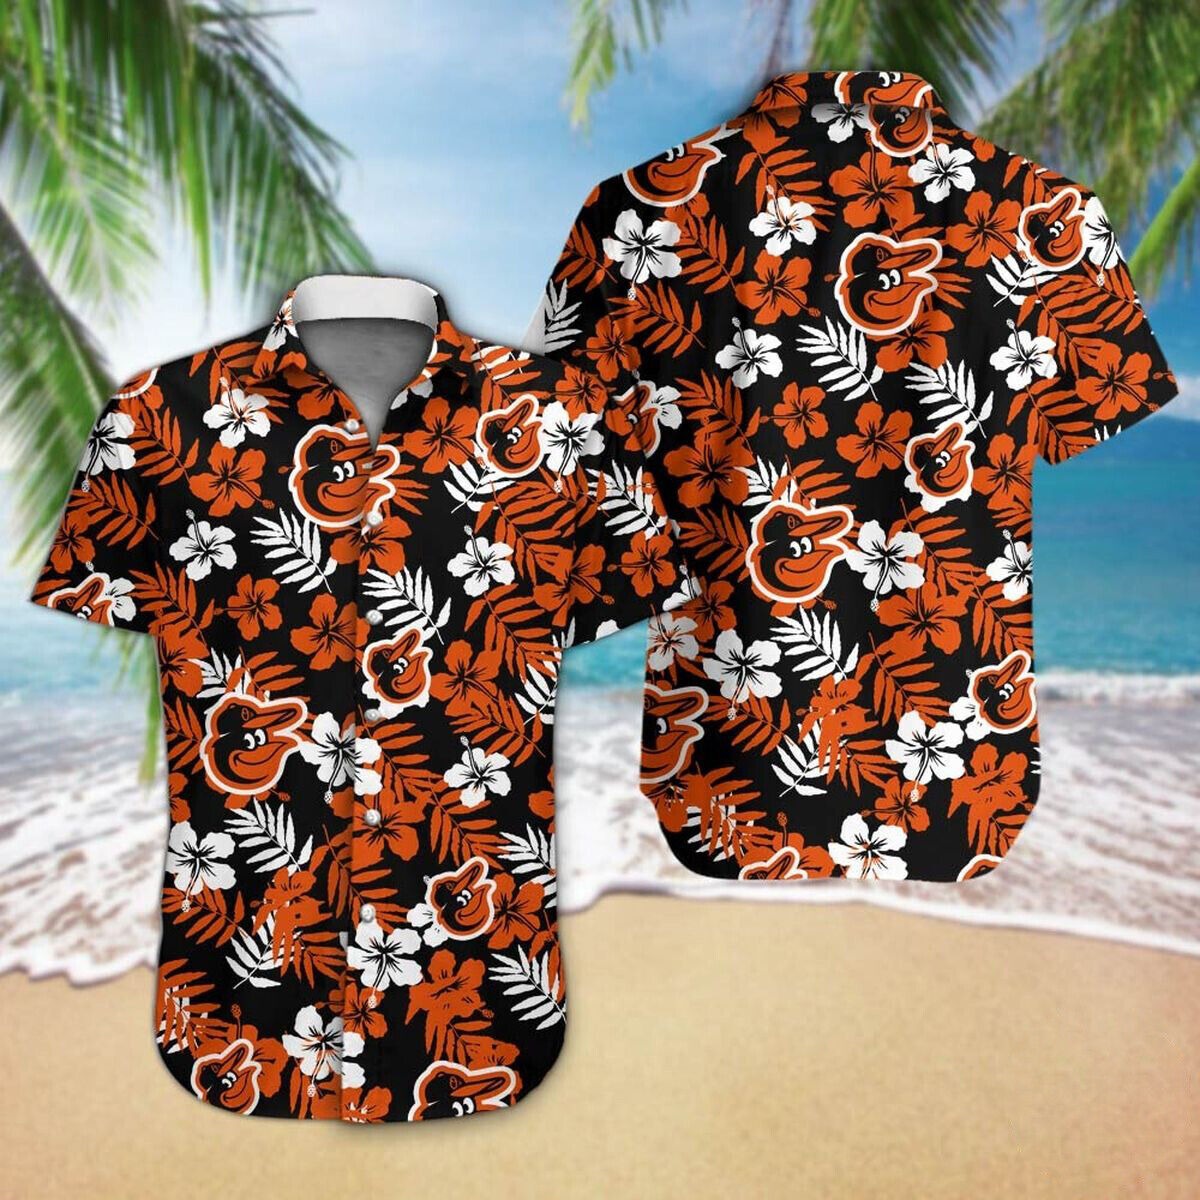 Baseball Baltimore Orioles Floral Tropicial Hawaiian Shirt - Orioles Hawaiian Shirt